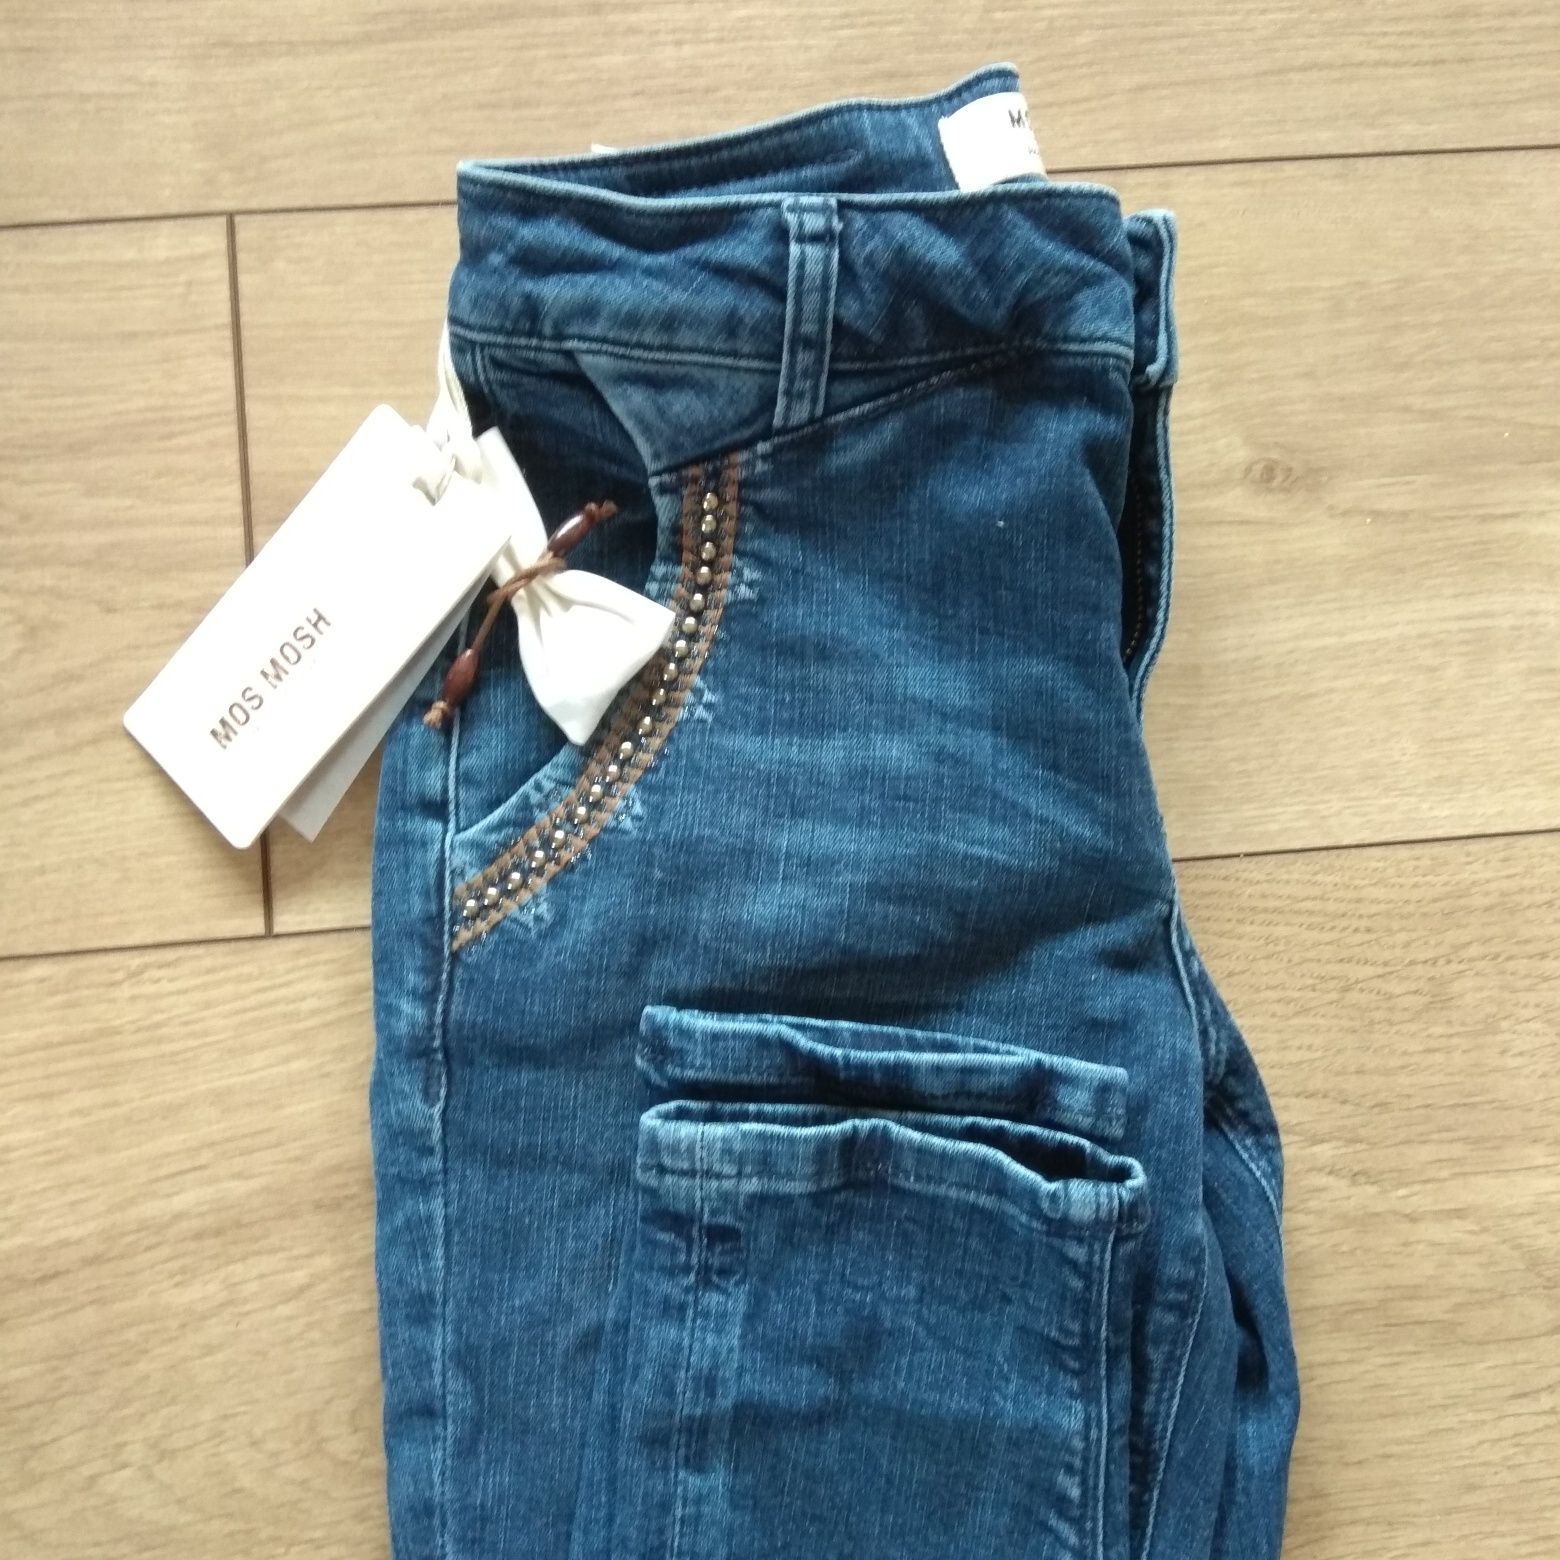 Mos Mosh Jeans 34 xs nowe z metką, spodnie jeansowe, jeansy, dżinsy